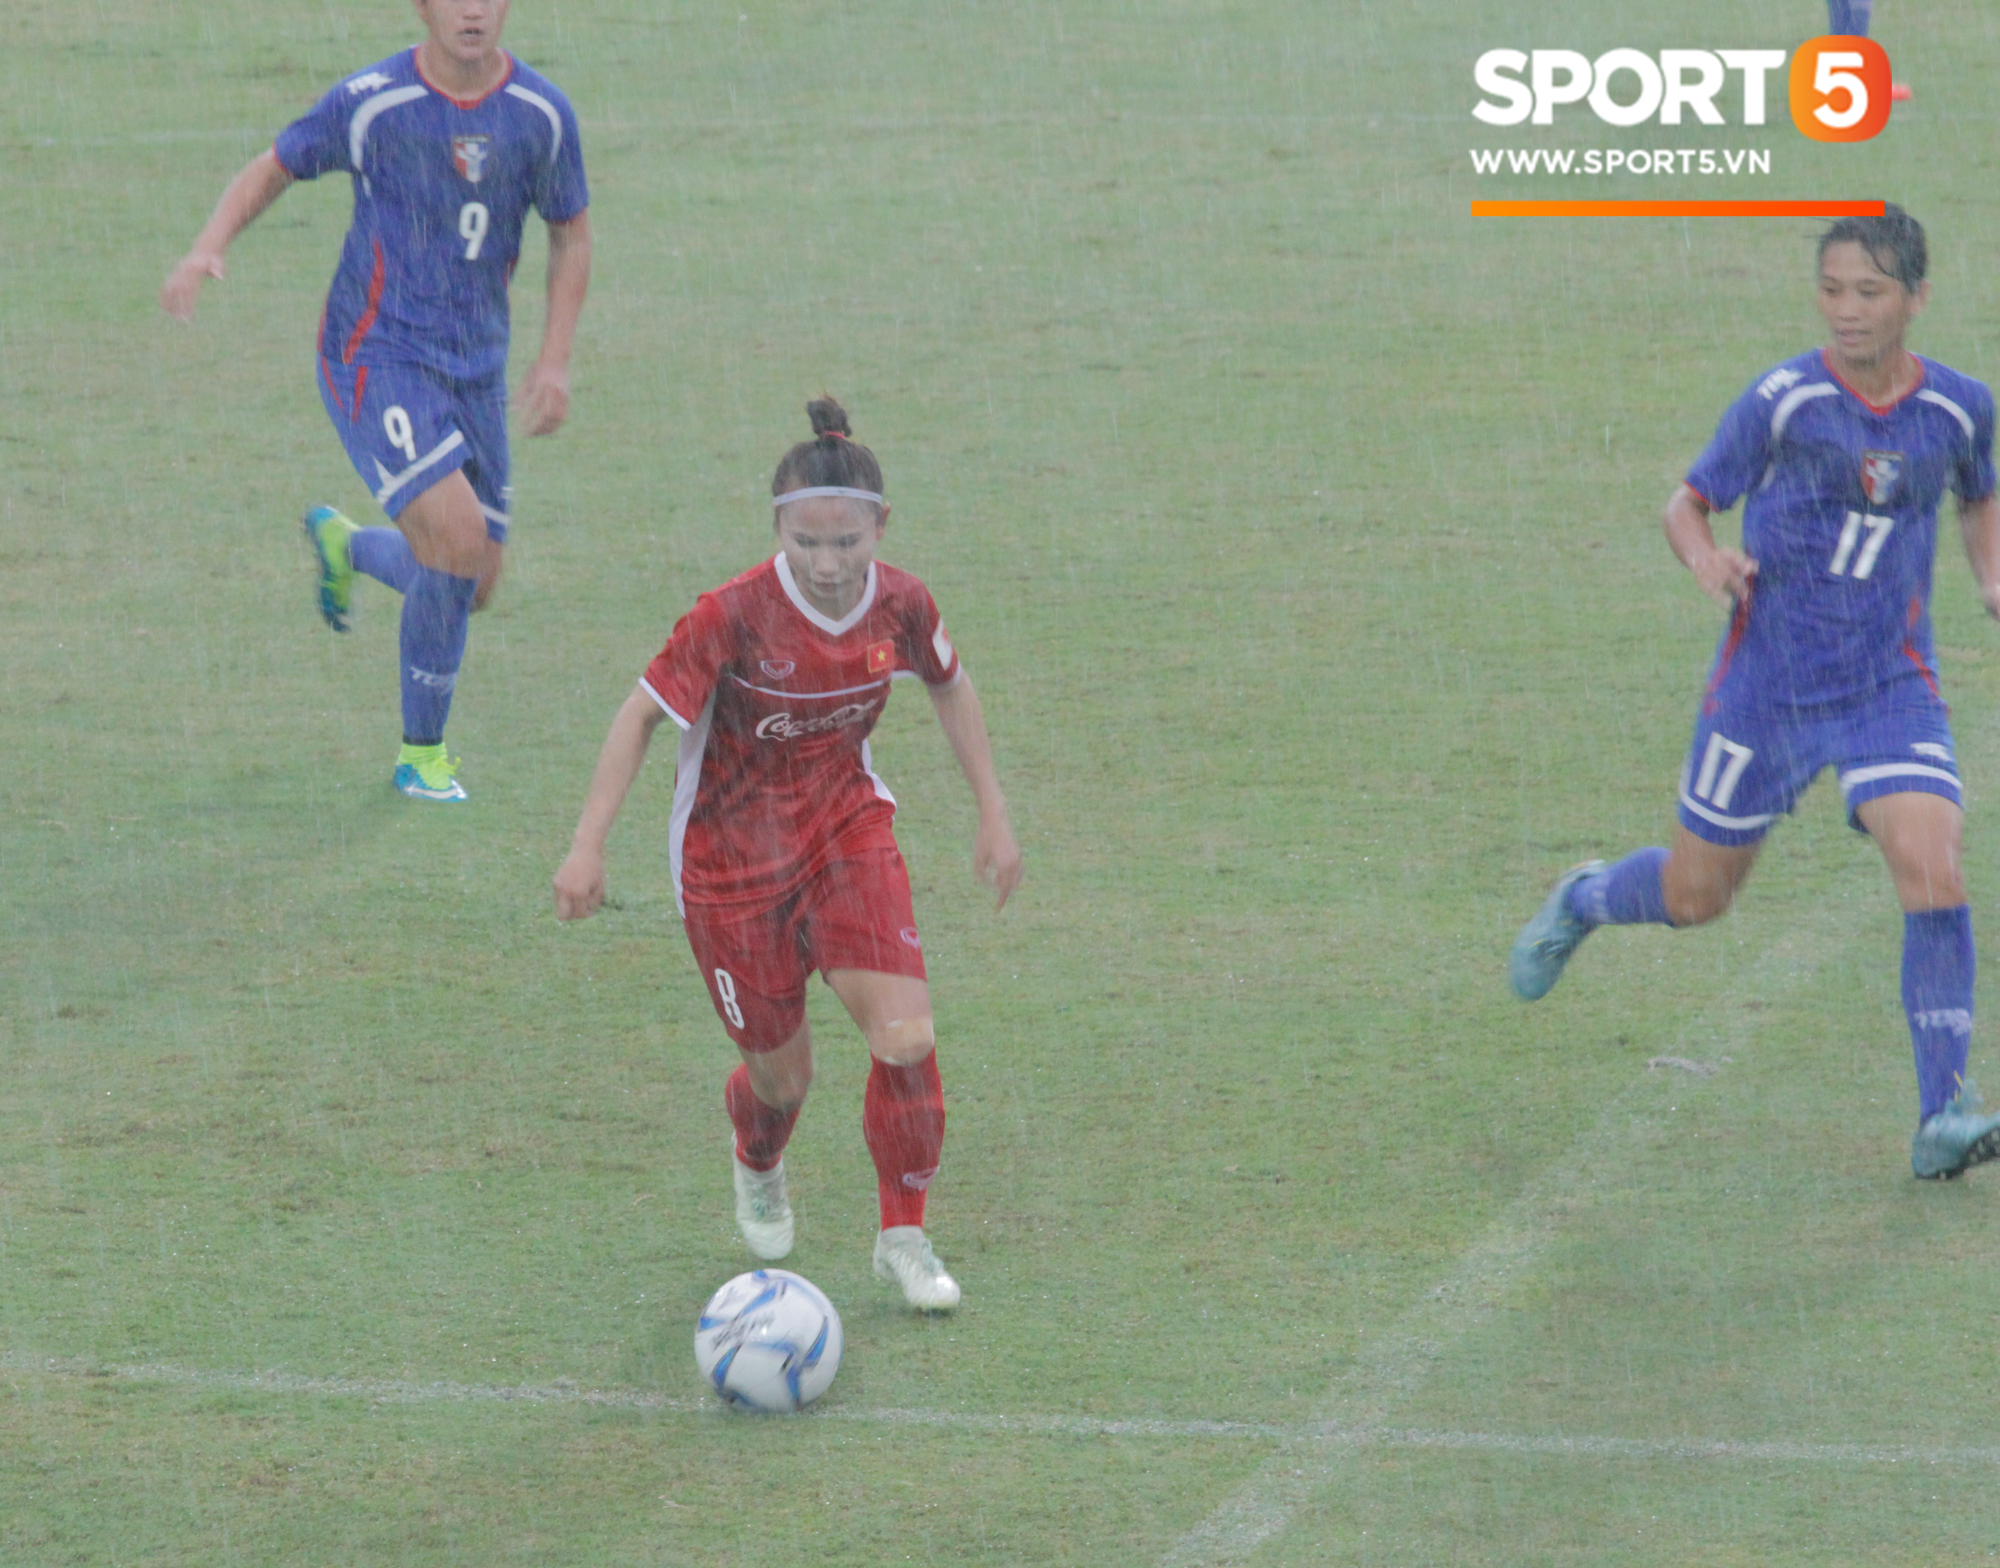 ĐT nữ Việt Nam đánh bại Đài Bắc Trung Hoa 4-0 trong trận tái đấu - Ảnh 1.